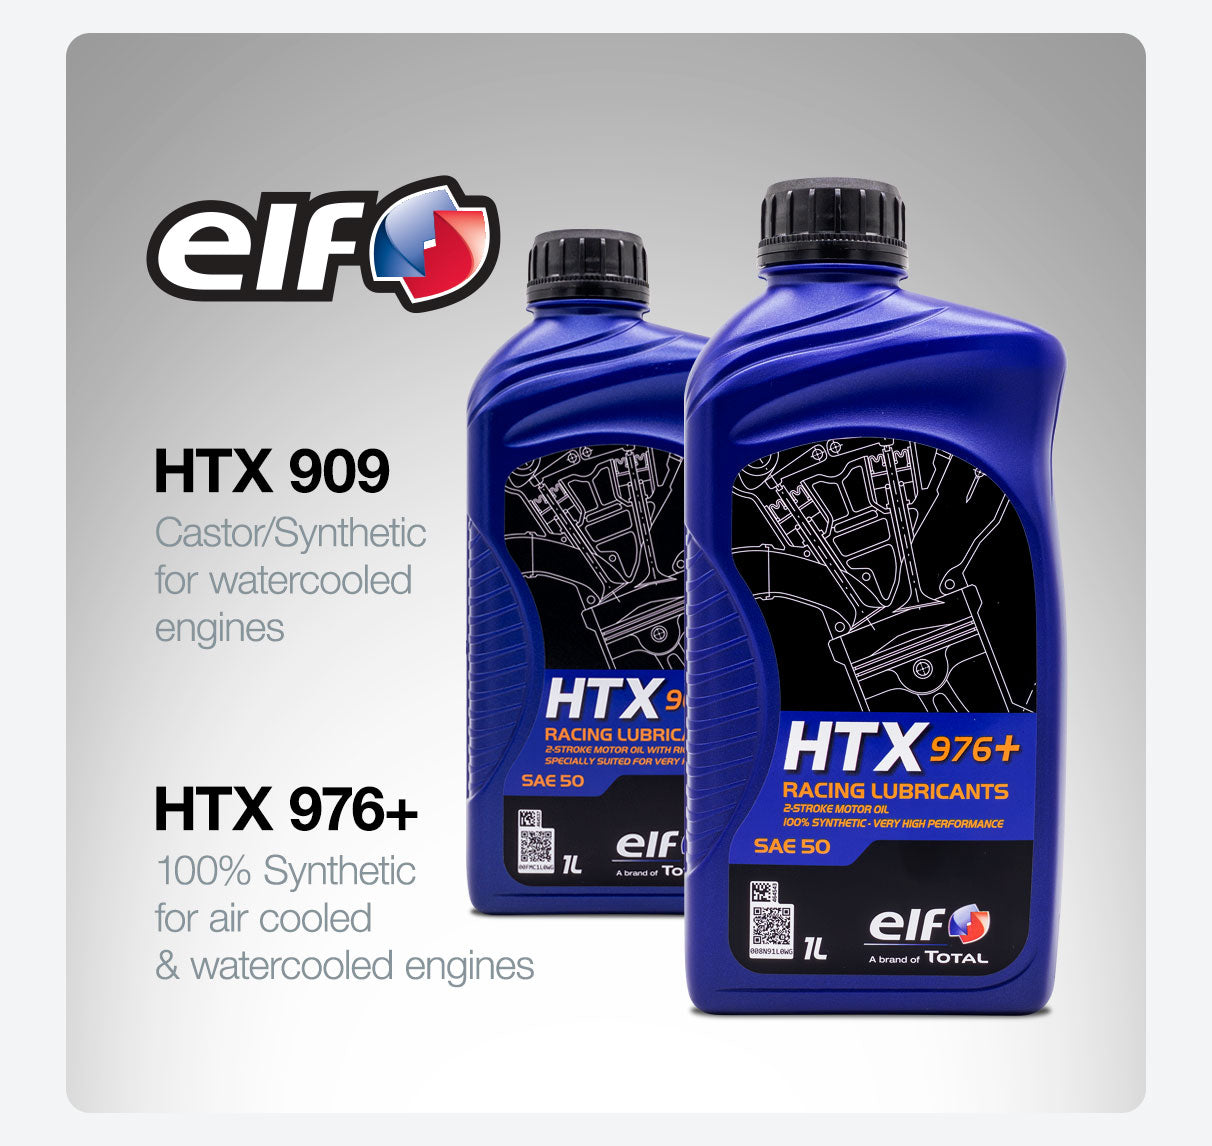 ELF HTX 909 HTX 976+ 2-stroke kart engine oil